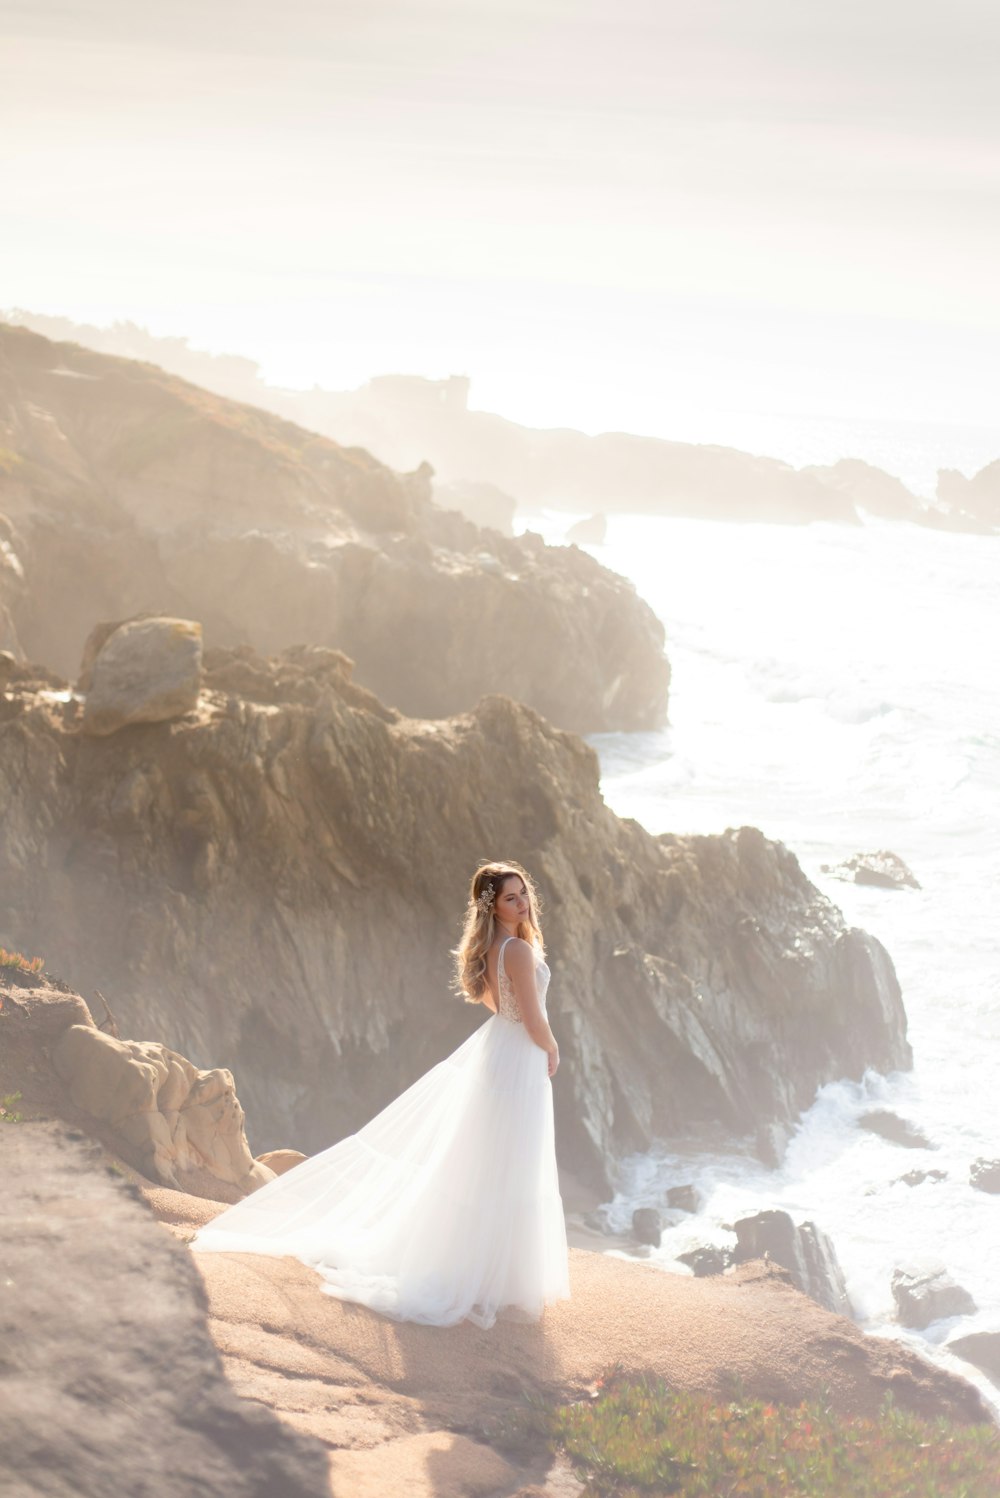 Frau im weißen Hochzeitskleid, die tagsüber auf einer Felsformation in der Nähe eines Gewässers steht